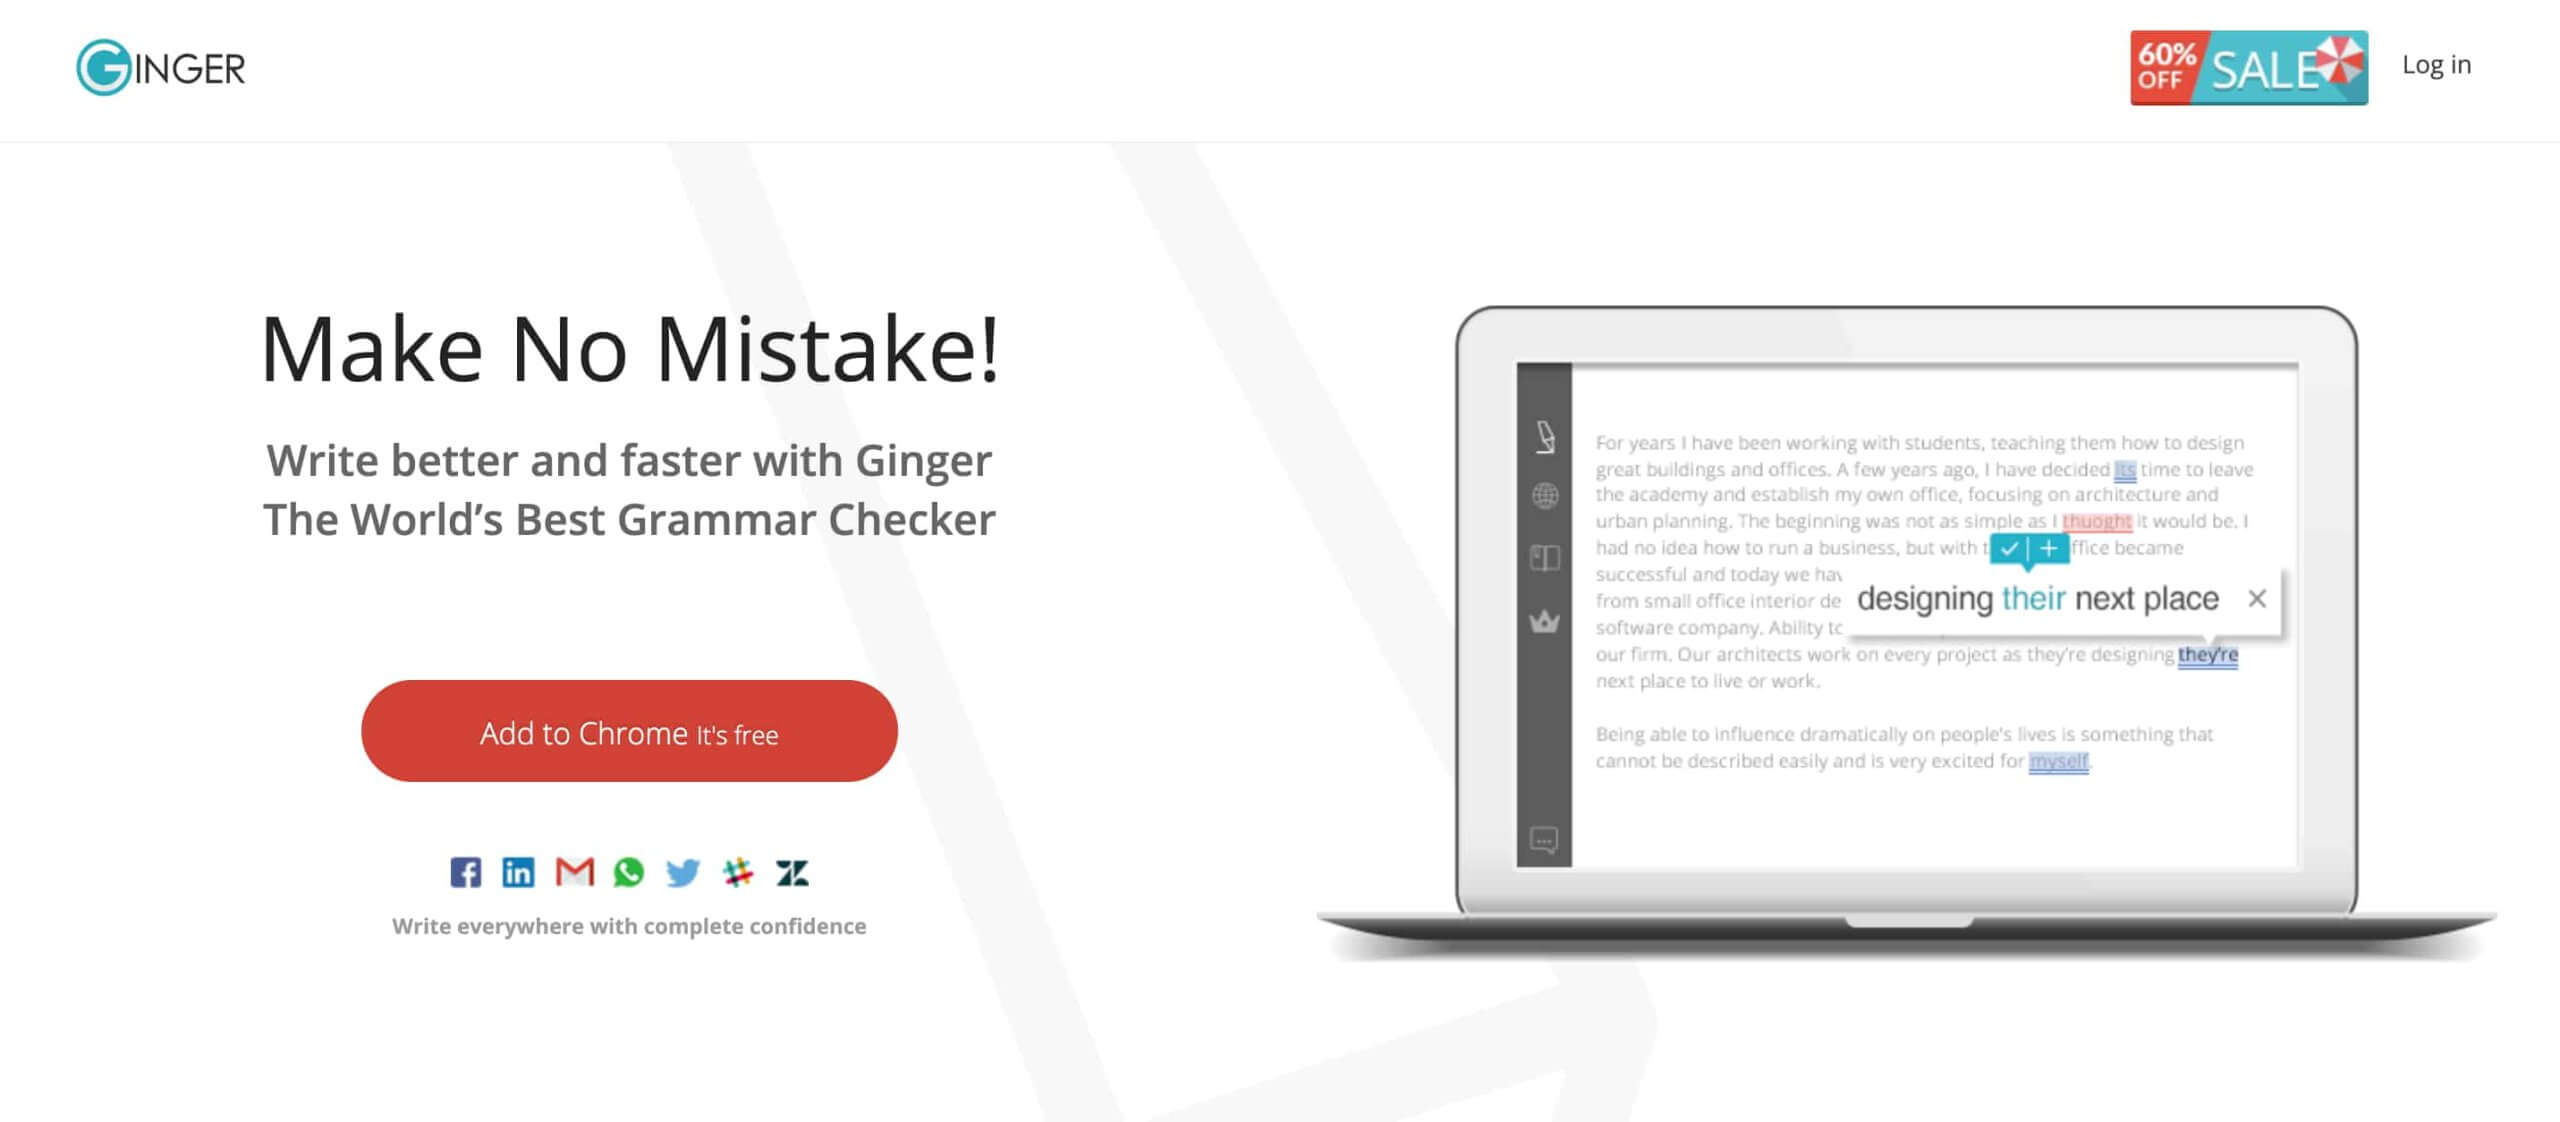 best grammar checker, best grammar checker software, best grammar checker tools, grammar checker software, grammar checker tools